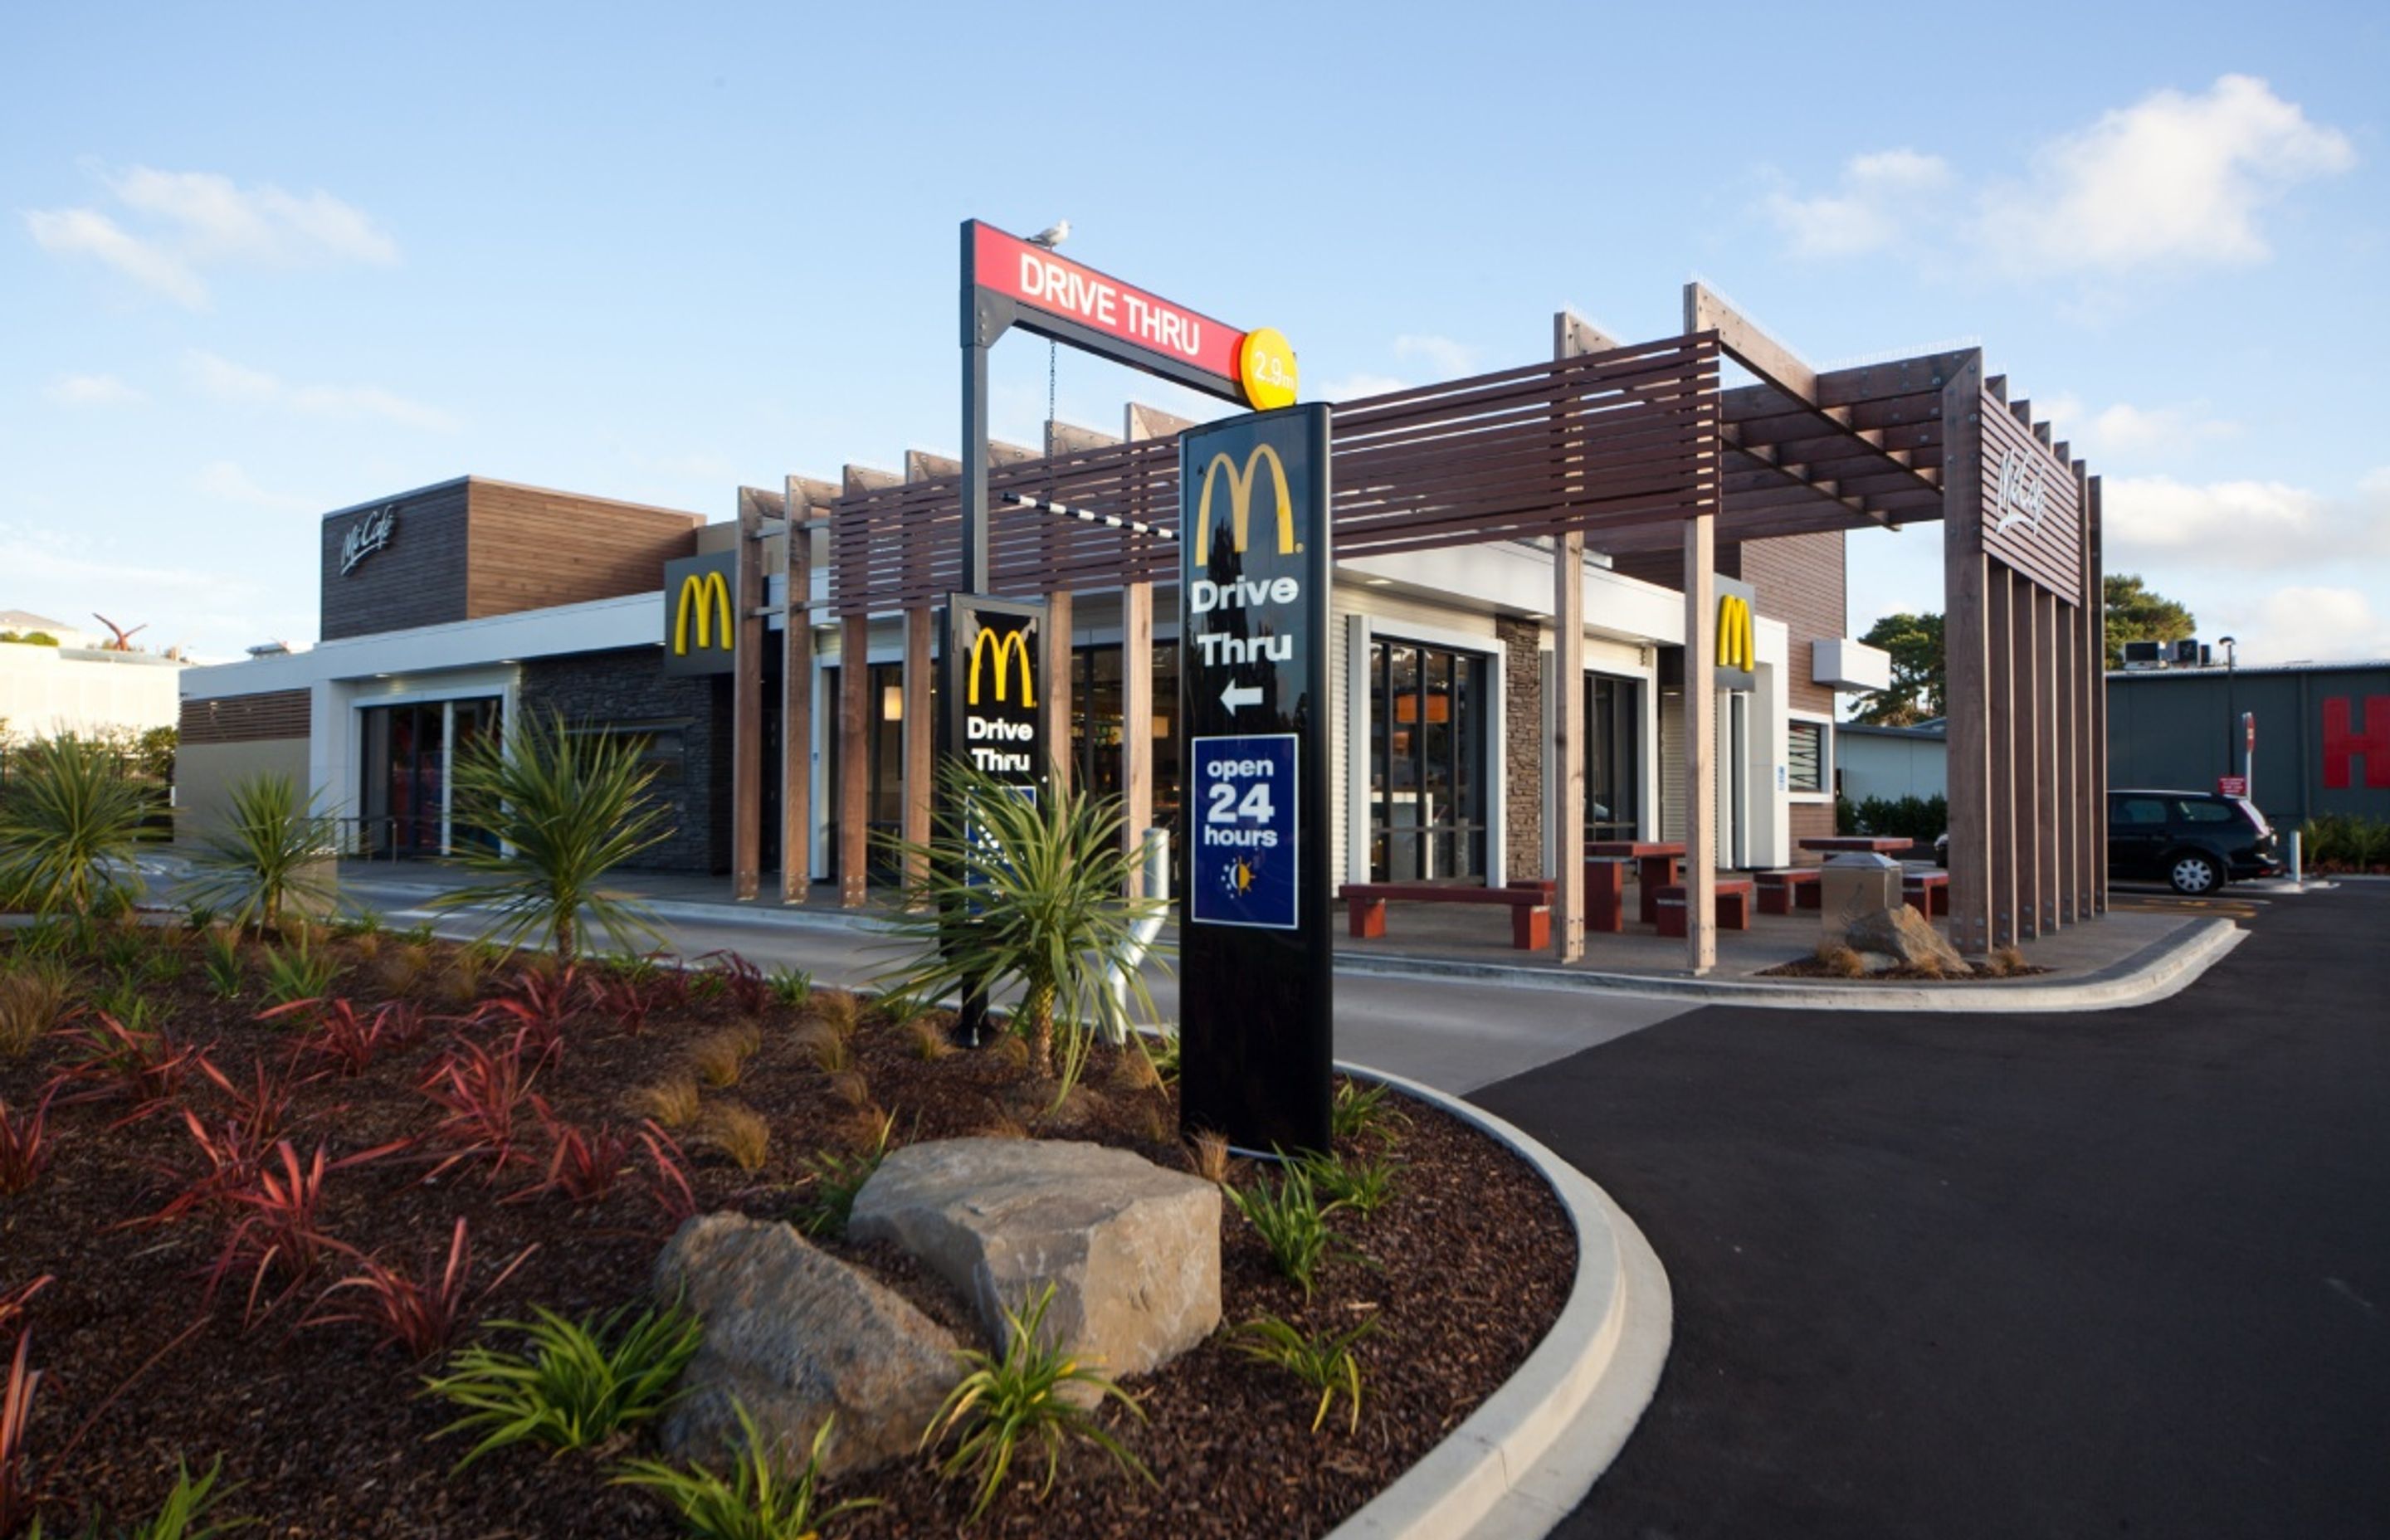 McDonald's Whangaparoa